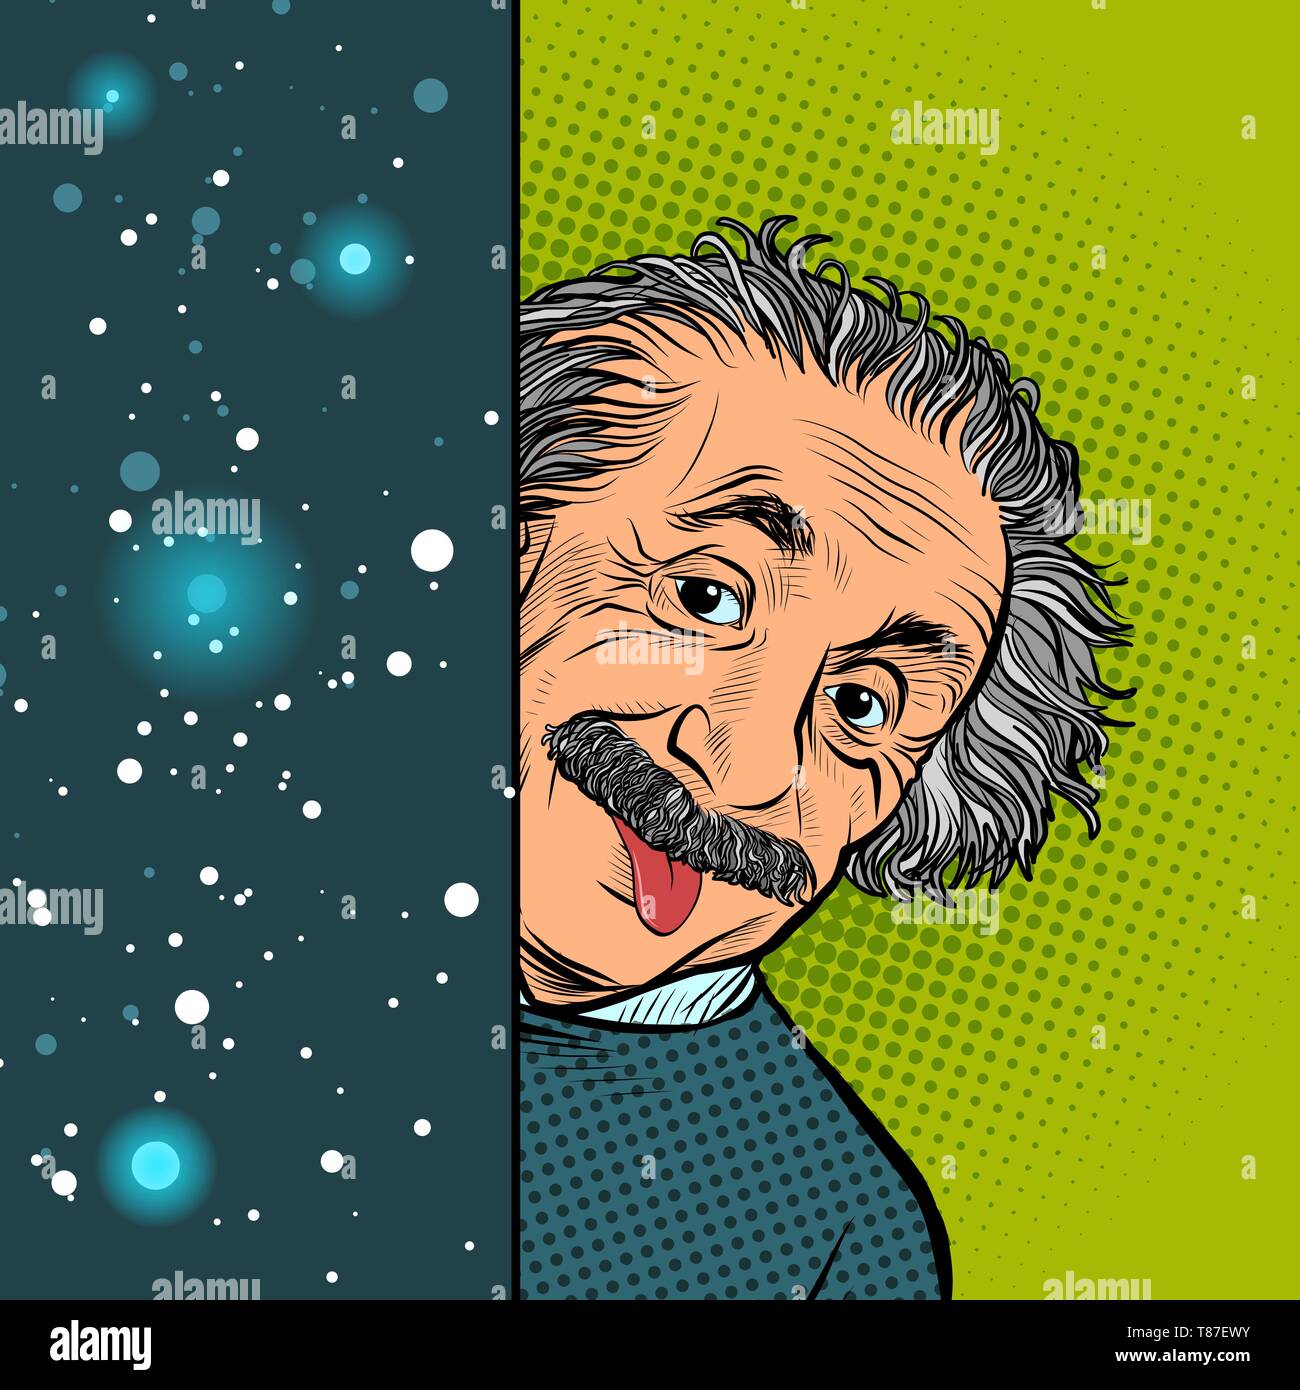 Moskau, Russland - 11. April 2019. Albert Einstein, Wissenschaftler, Physiker, handgezeichneten Portrait. Wissenschaft und Bildung. Das Thema der Theorie der Relati Stock Vektor